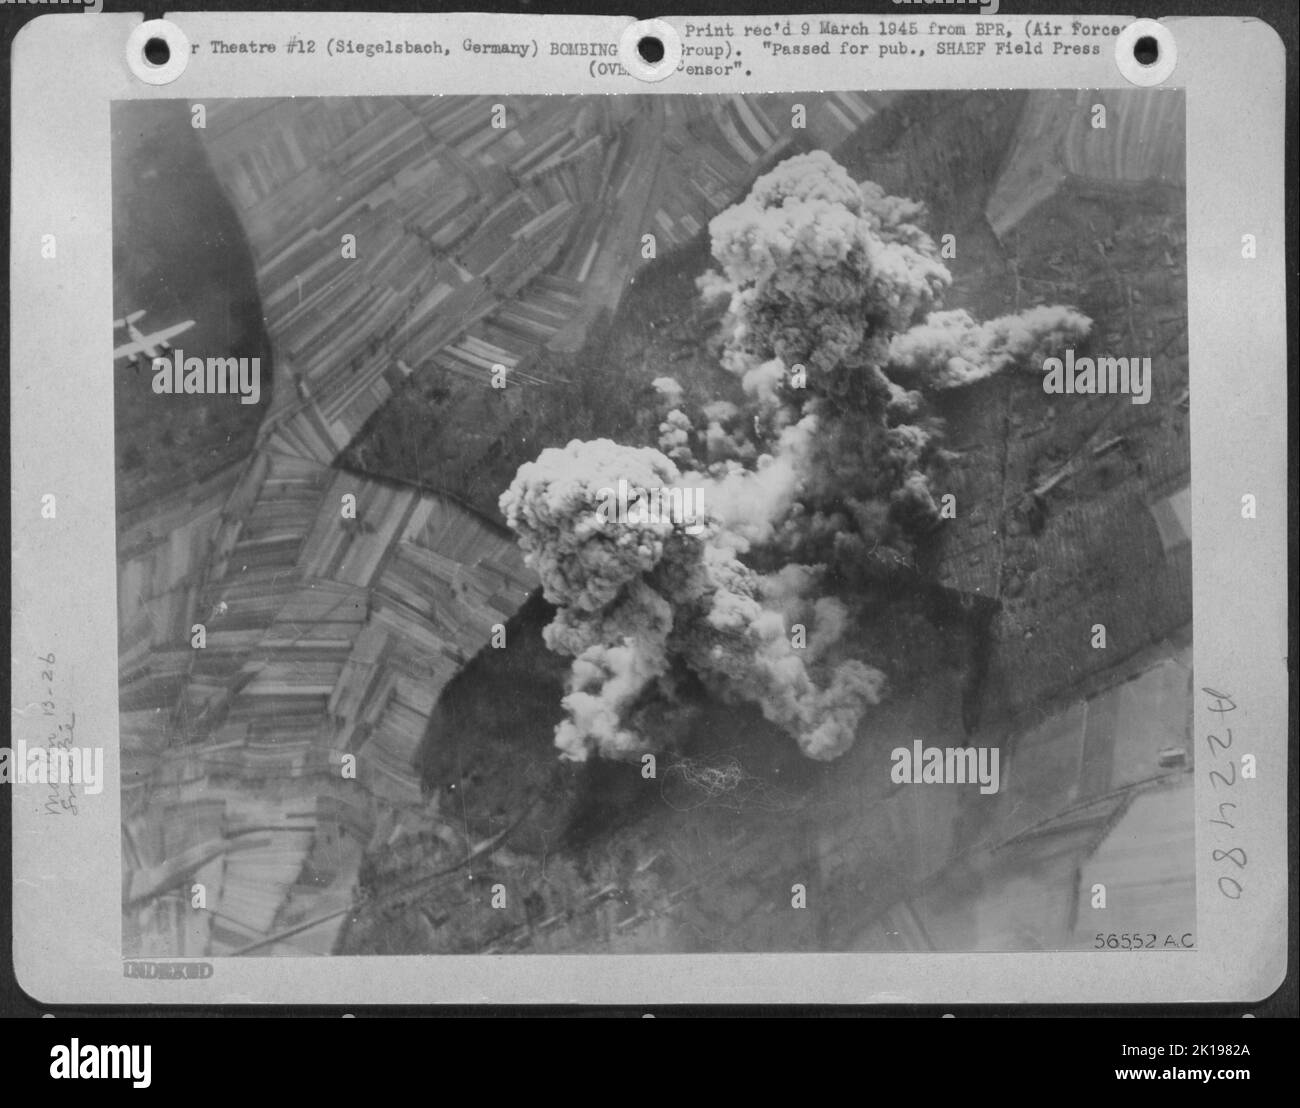 Eine erste taktische Luftwaffe Martin B-26 Marauder wird neben den daraus resultierenden explosiven Rauchwolken nach einem Angriff der Mittelbomber auf eine deutsche Munitionsanlage und einen vermuteten V-2-Lagerplatz in Siegelsbach, 18 Meilen südöstlich von Heidelberg, in den Schatten gestellt Stockfoto